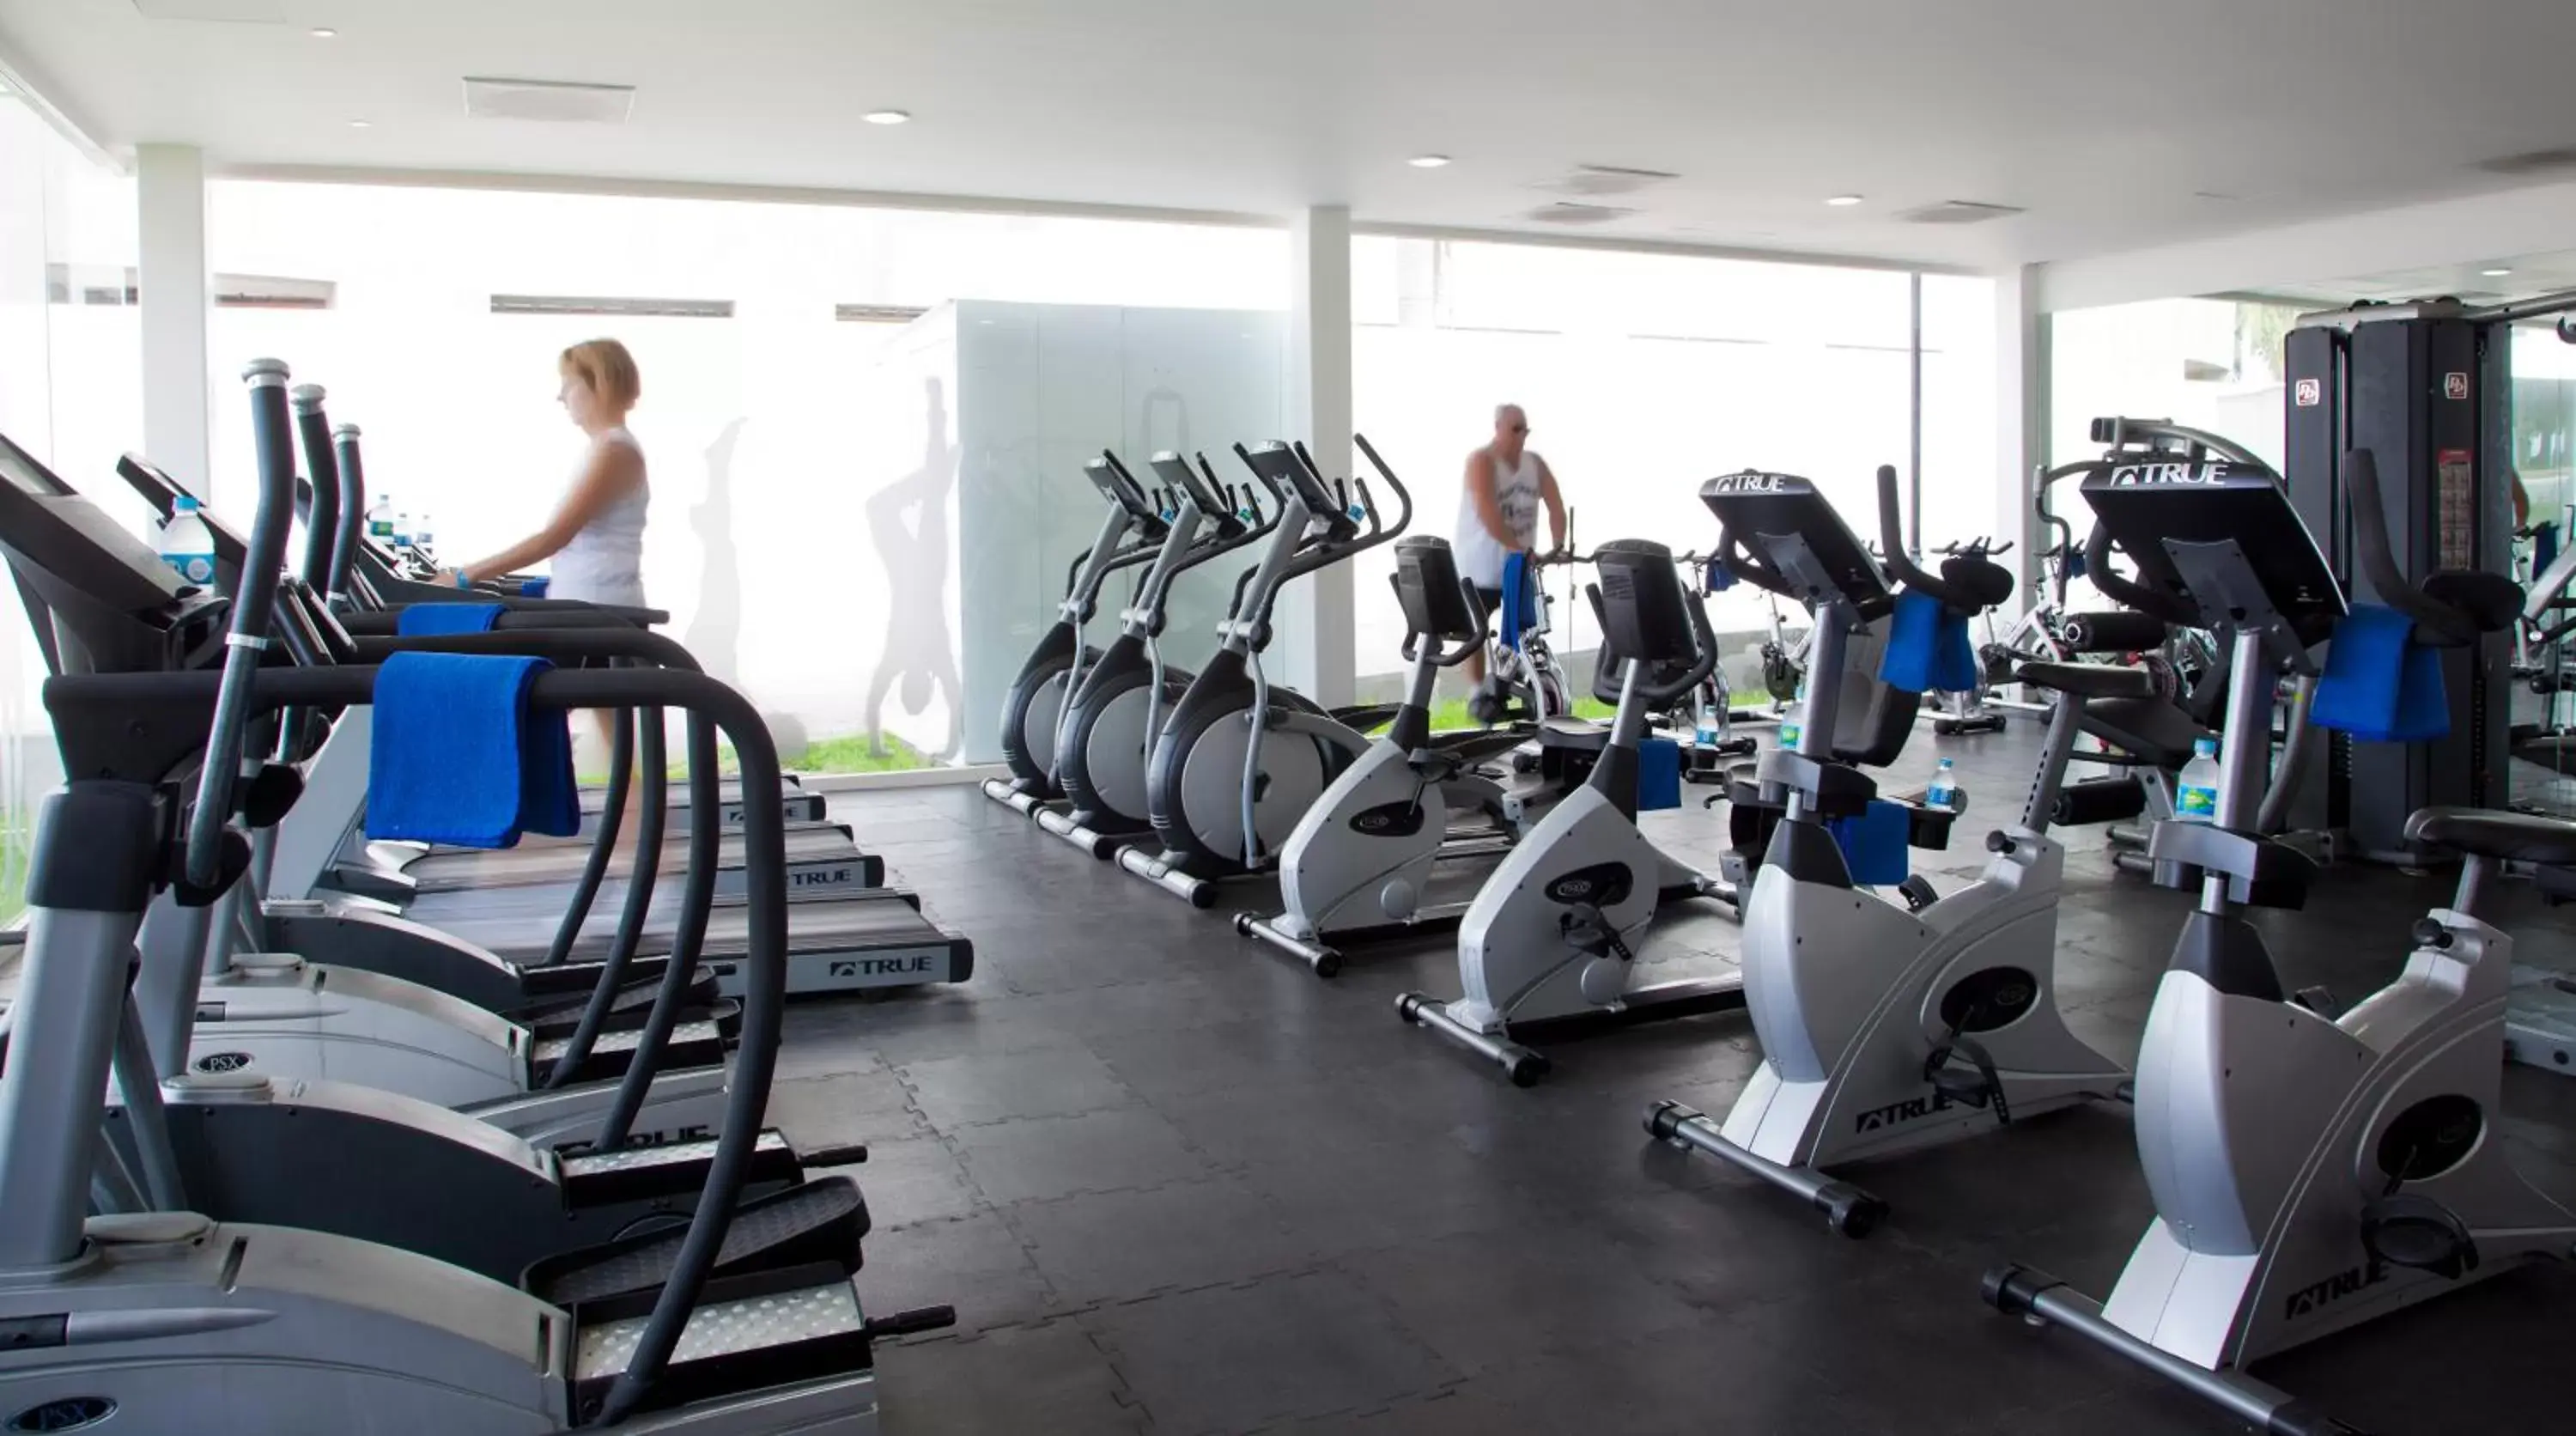 Fitness centre/facilities, Fitness Center/Facilities in Krystal Vallarta